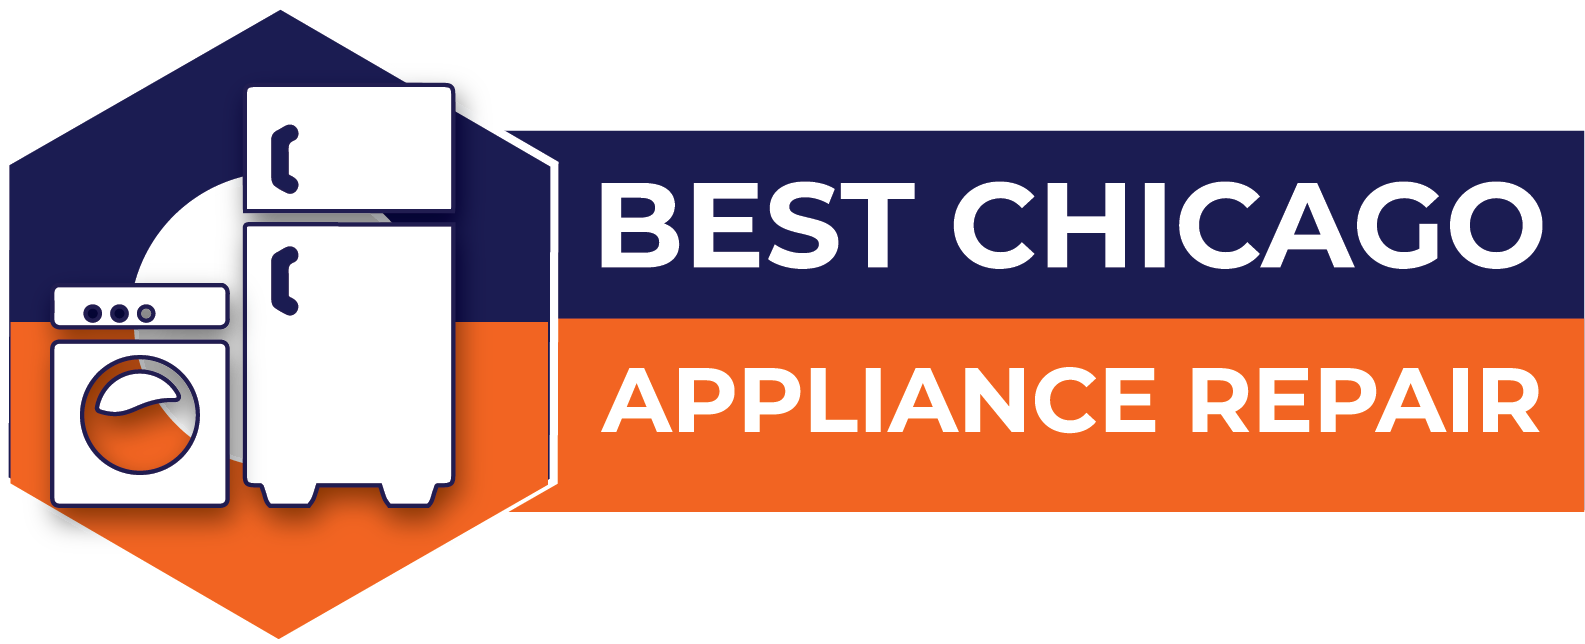 Best Chicago Appliance Repair